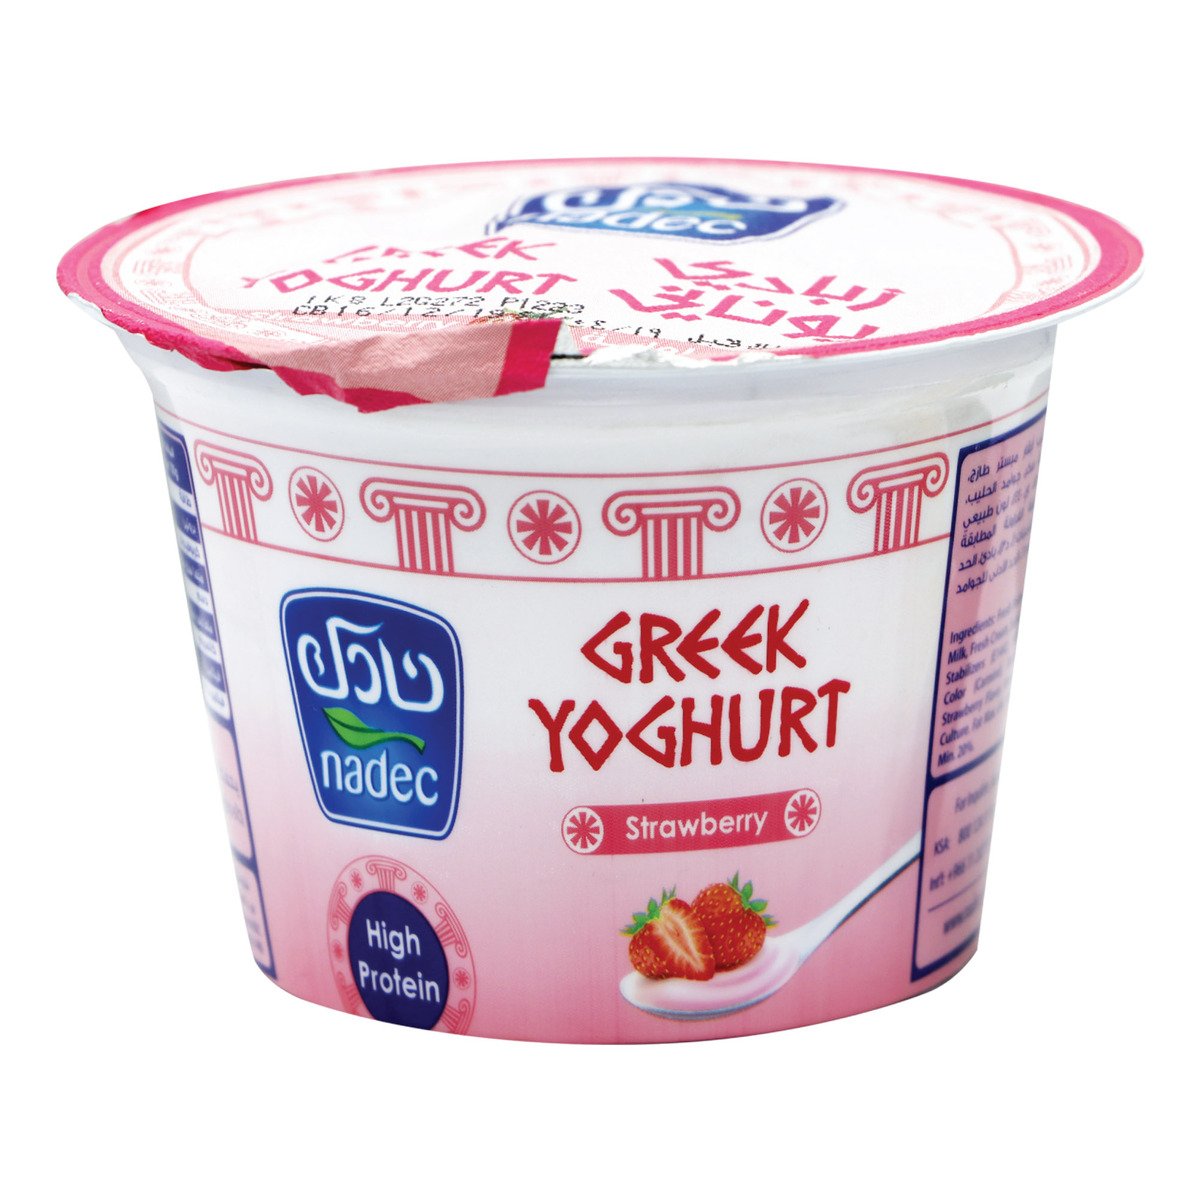 اشتري قم بشراء نادك زبادي يوناني بالفراولة 160 جم Online at Best Price من الموقع - من لولو هايبر ماركت Flavoured Yoghurt في السعودية